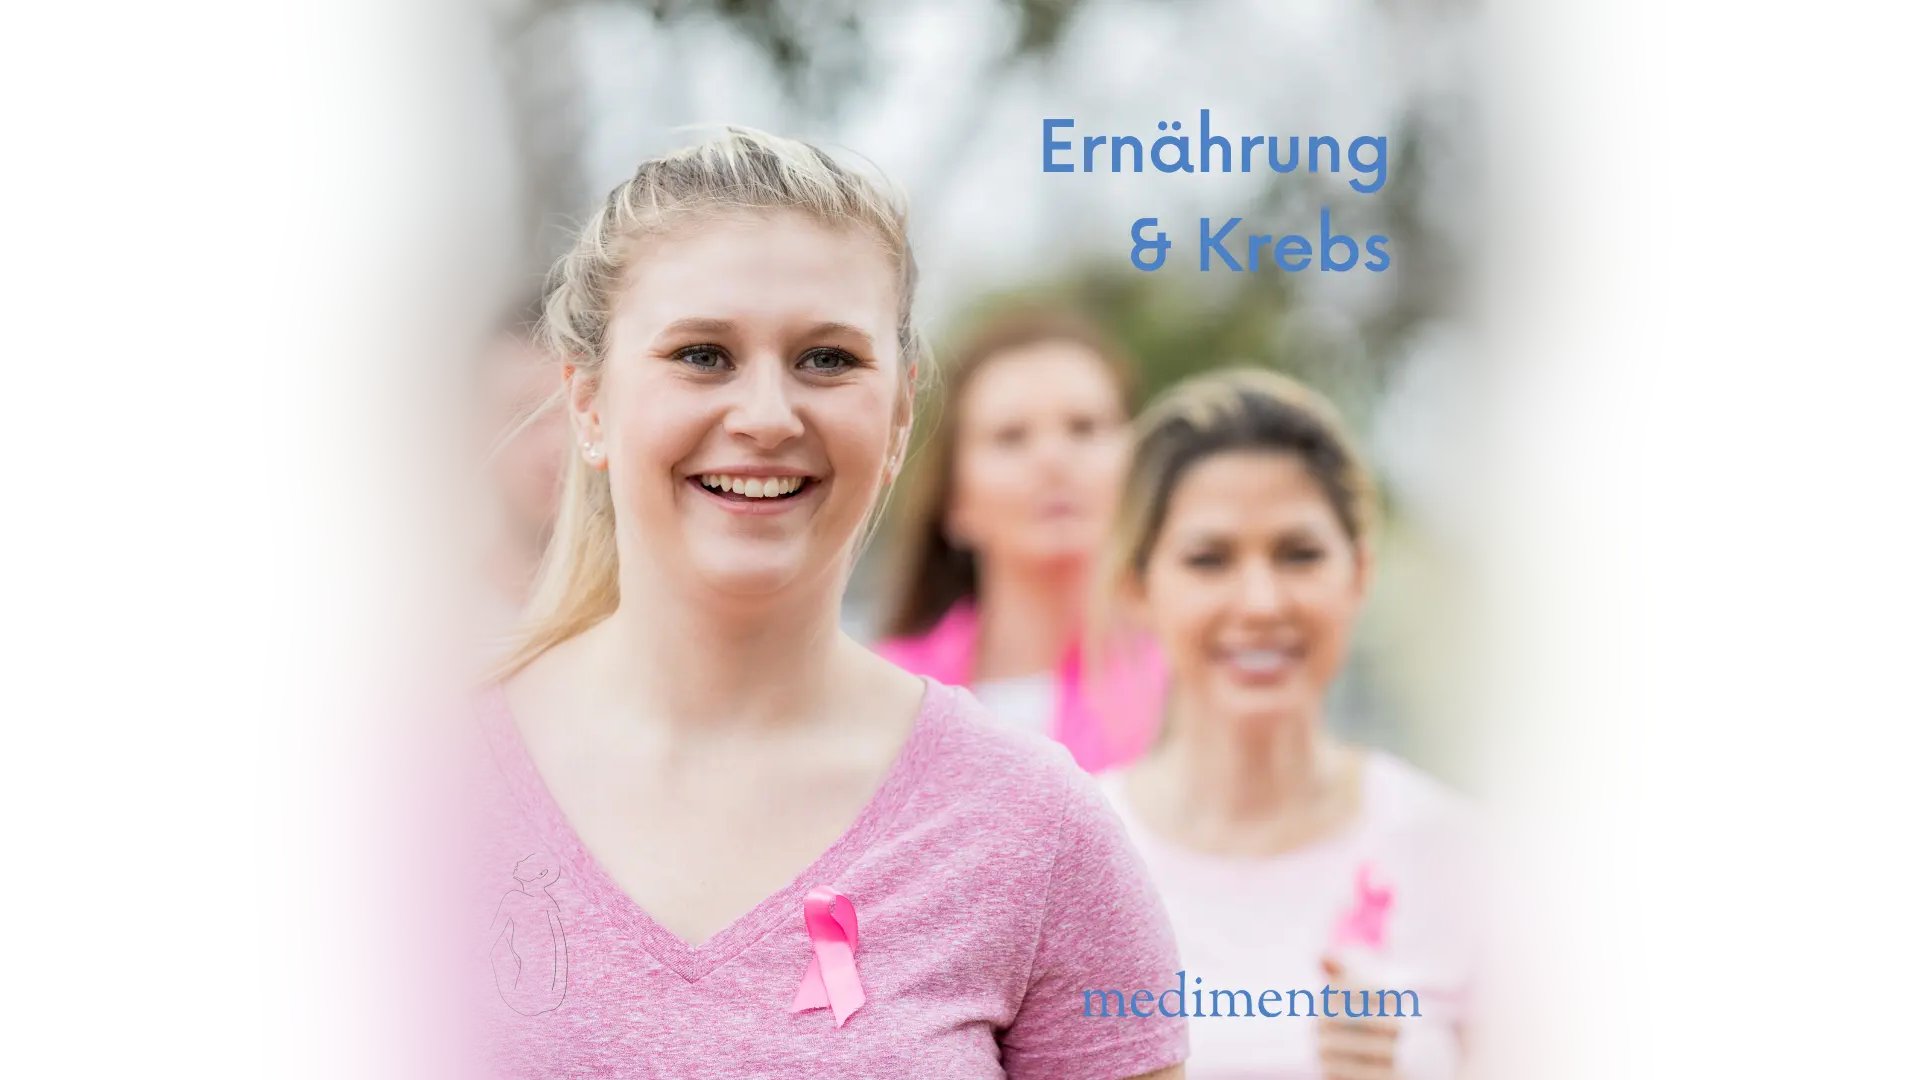 Junge, blonde lachende Frau mit pinken T-Shirt und gleichfarbiger Krebsschleife im Vordergrund. Im Hintergrund unscharf zwei Frauen und ein Mann, lachend, in der Natur. Schriftzug: "Ernährung & Krebs", "medimentum".